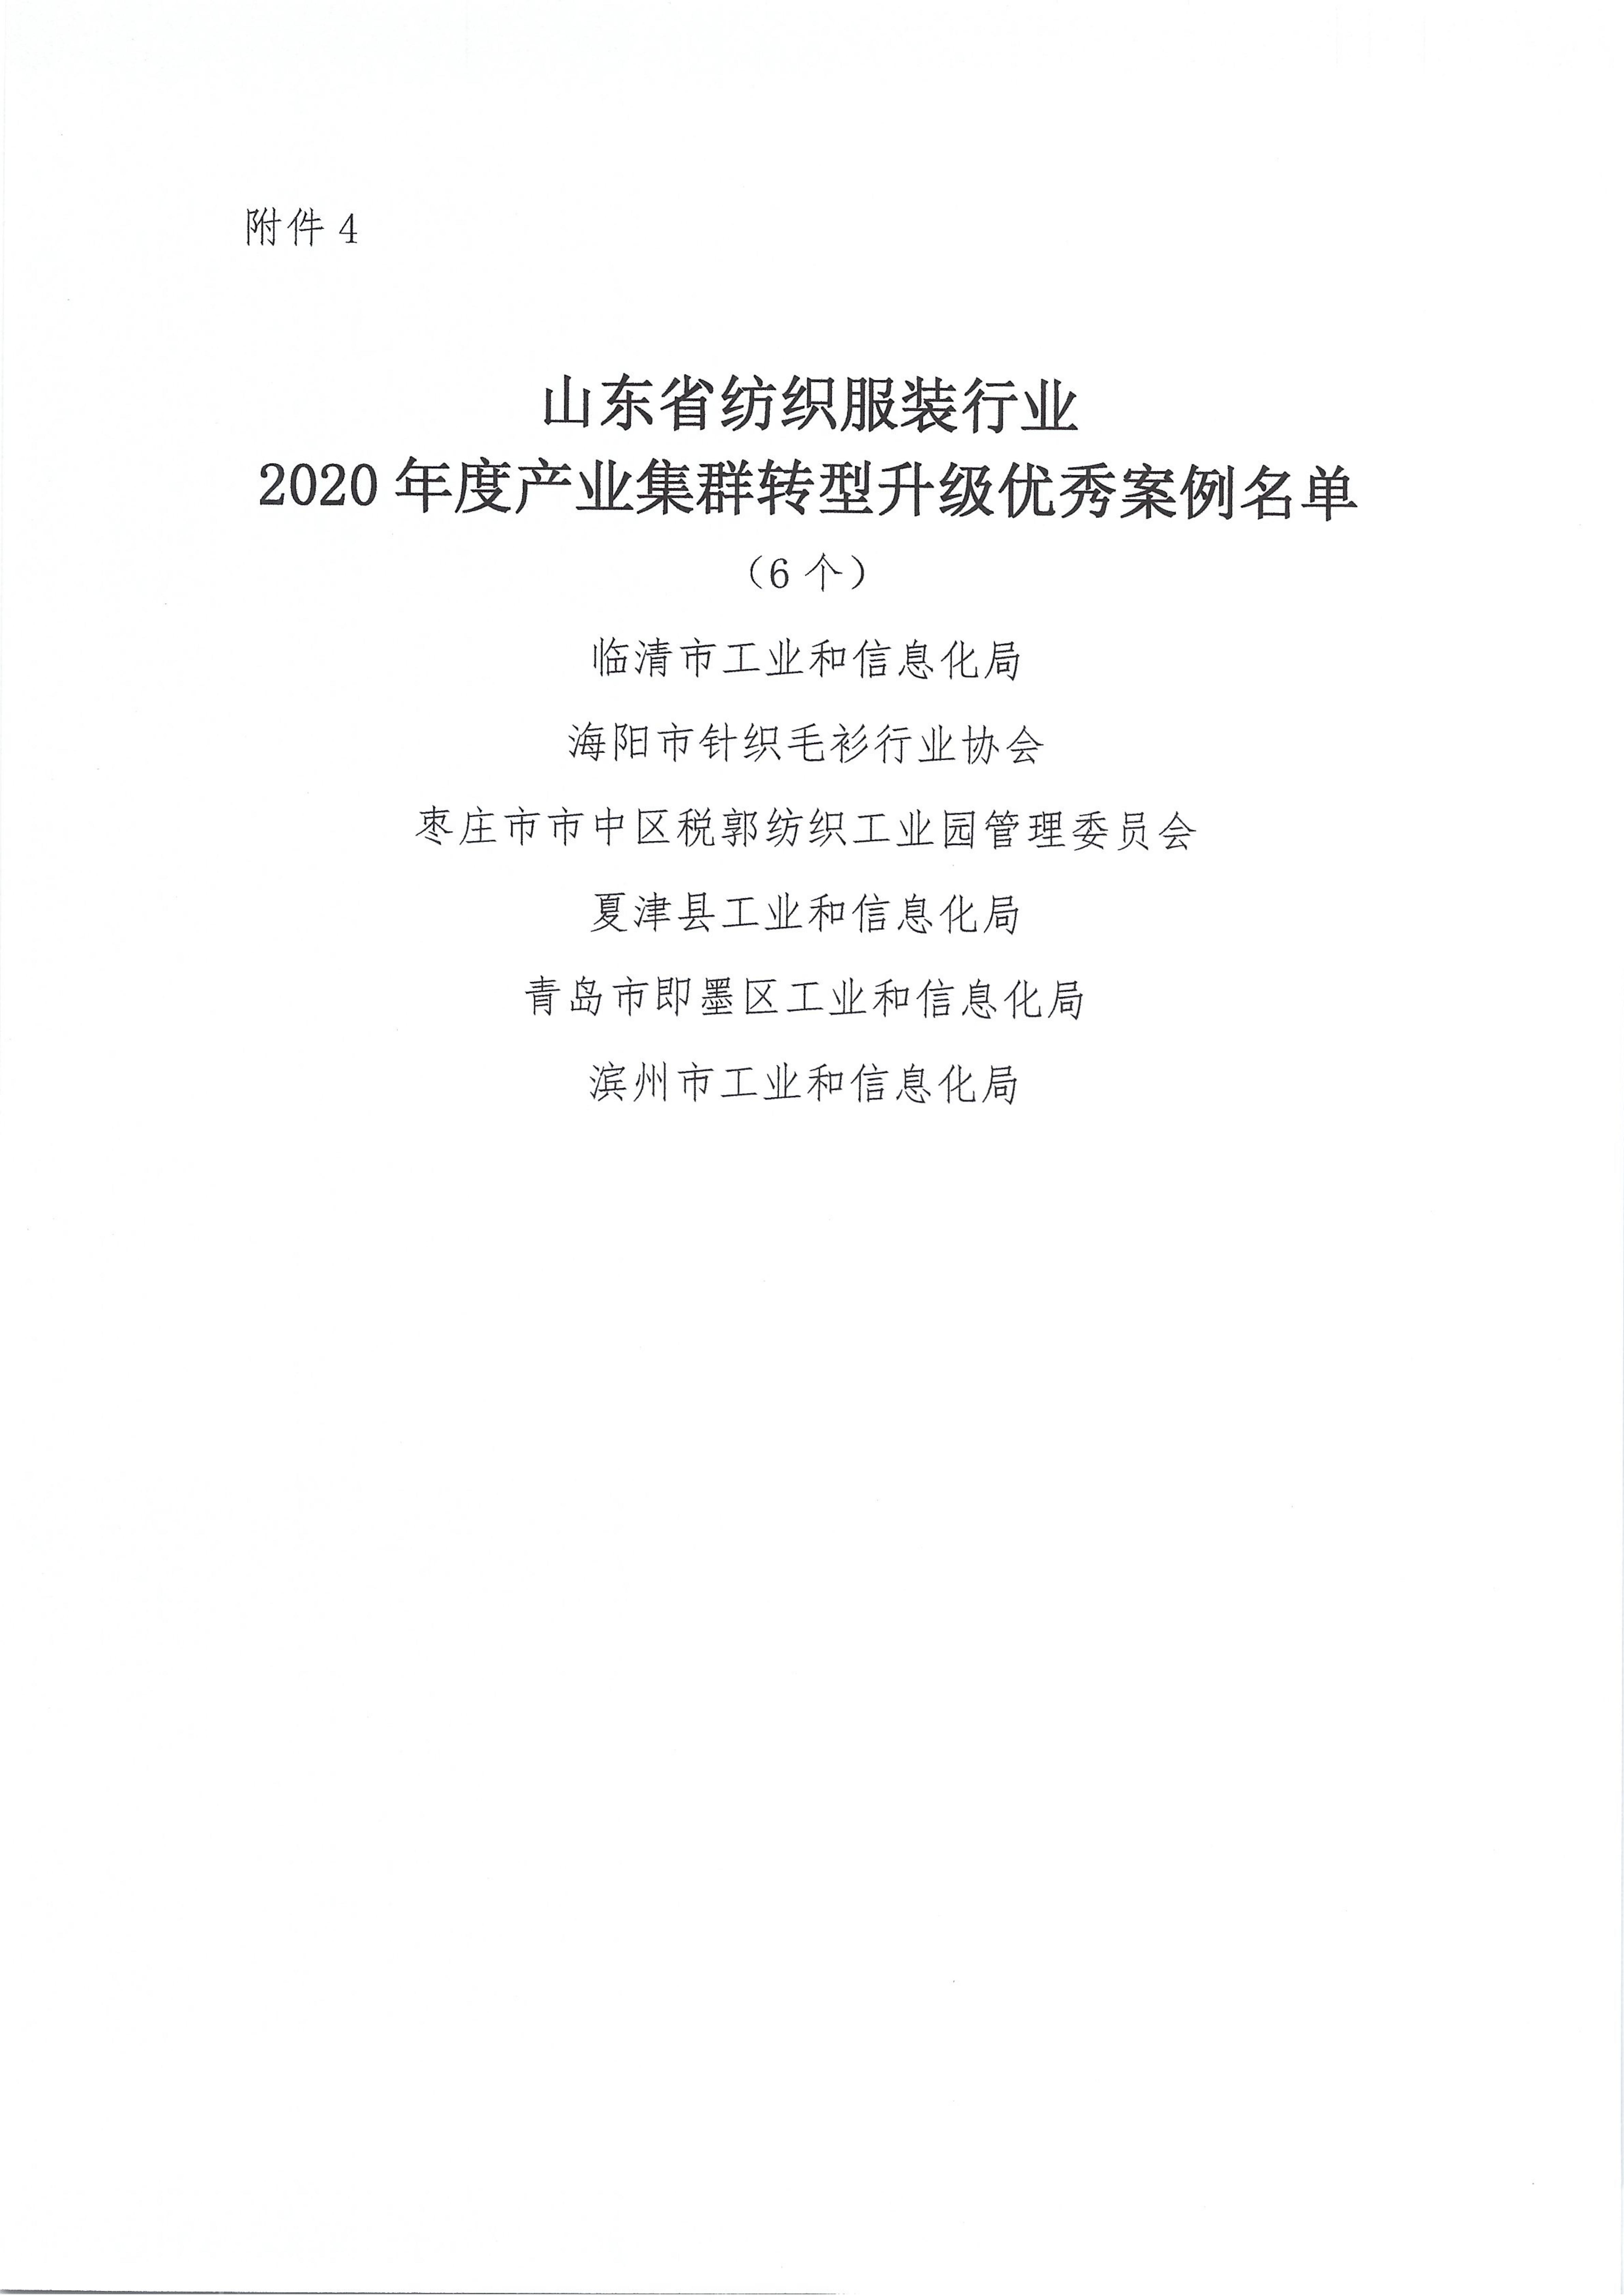 關于授予2020年度山東省紡織服裝行業新冠戰疫特別貢獻獎等獎項的決定_09.jpg